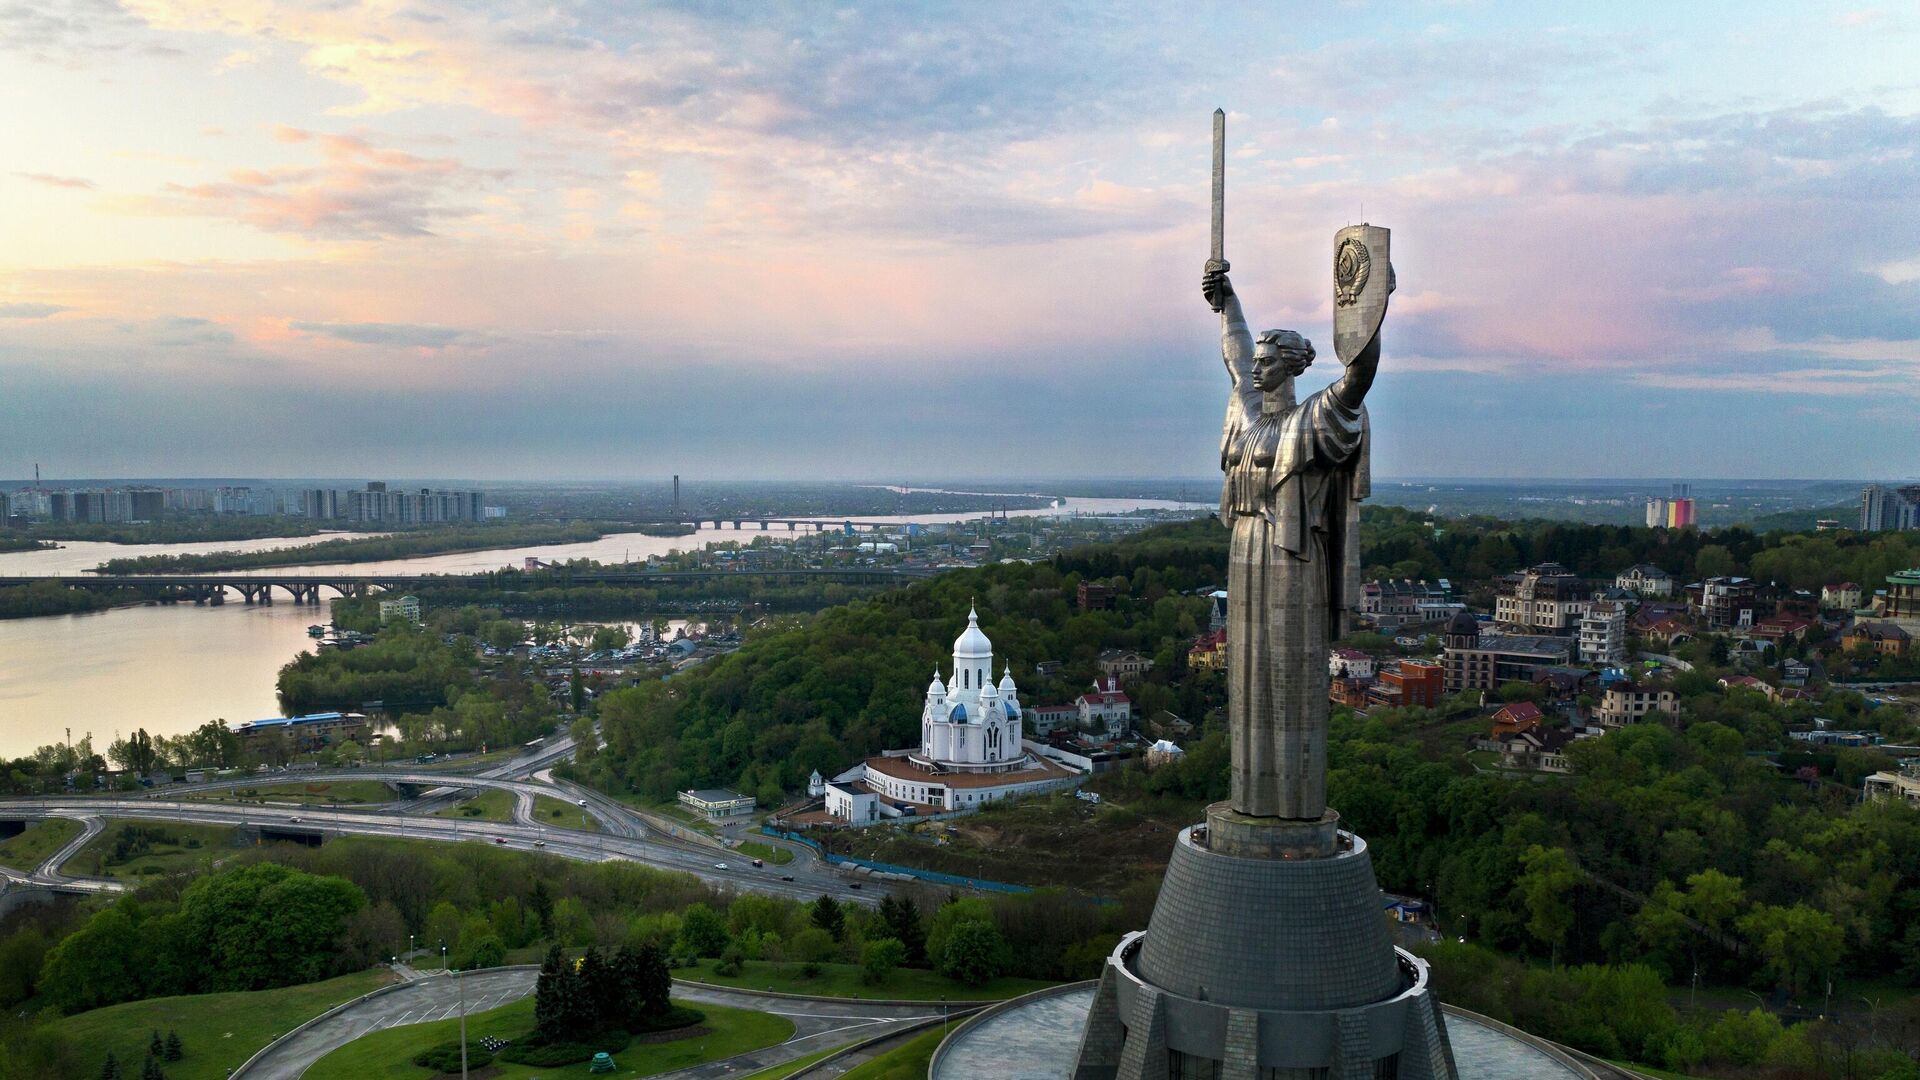 Родина Мать - 102-метровый стальной памятник времен Второй мировой войны советских времен над рекой Днепр - Sputnik Таджикистан, 1920, 20.08.2021